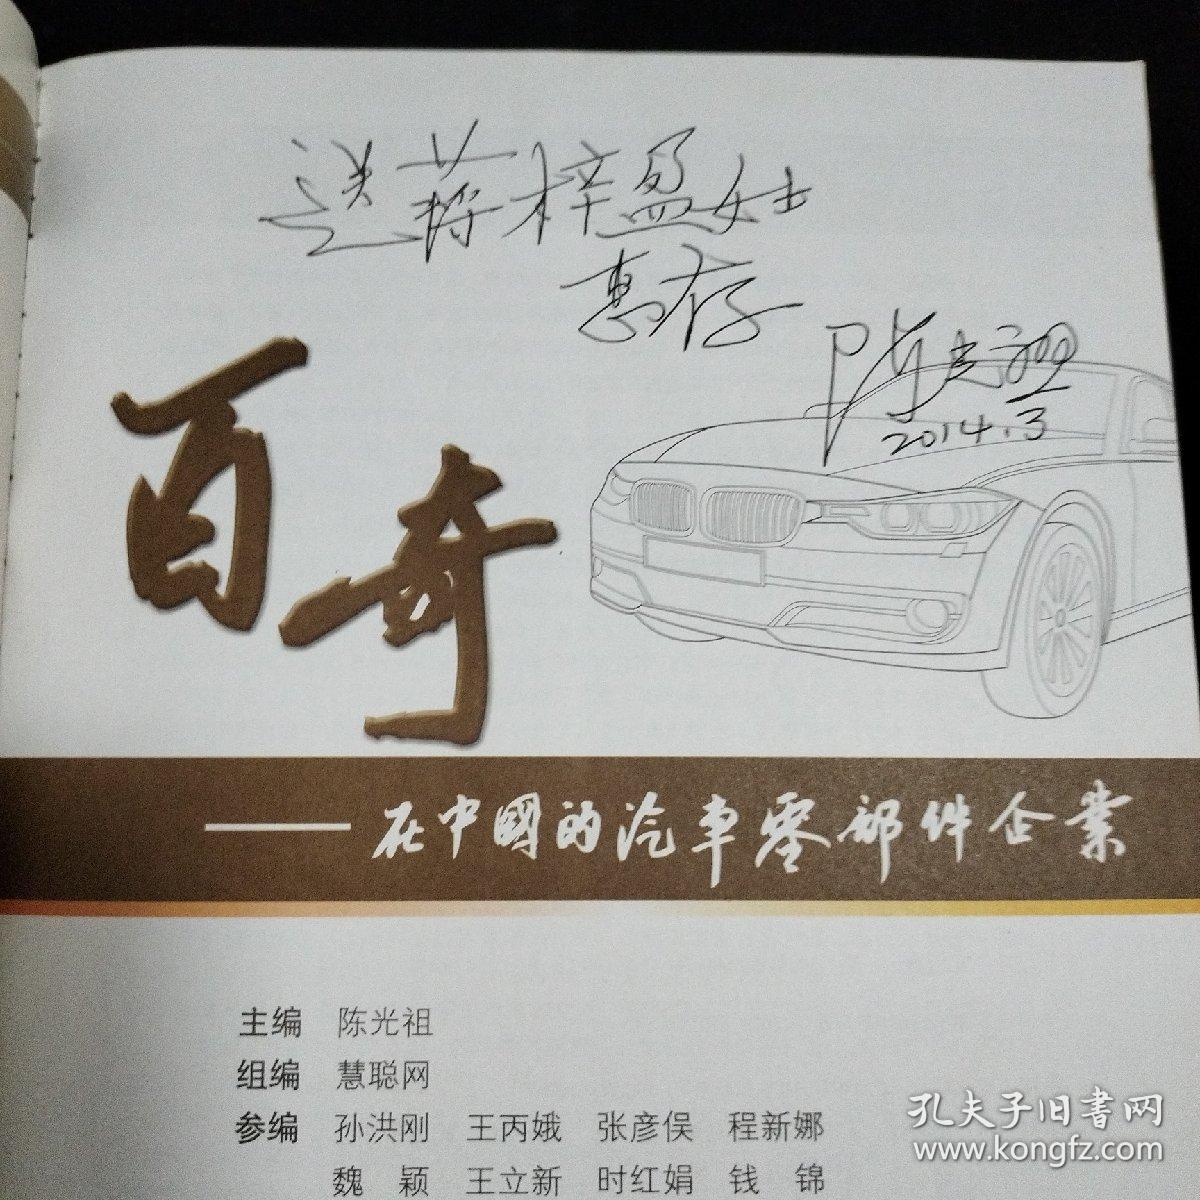 百奇：在中国的汽车零部件企业